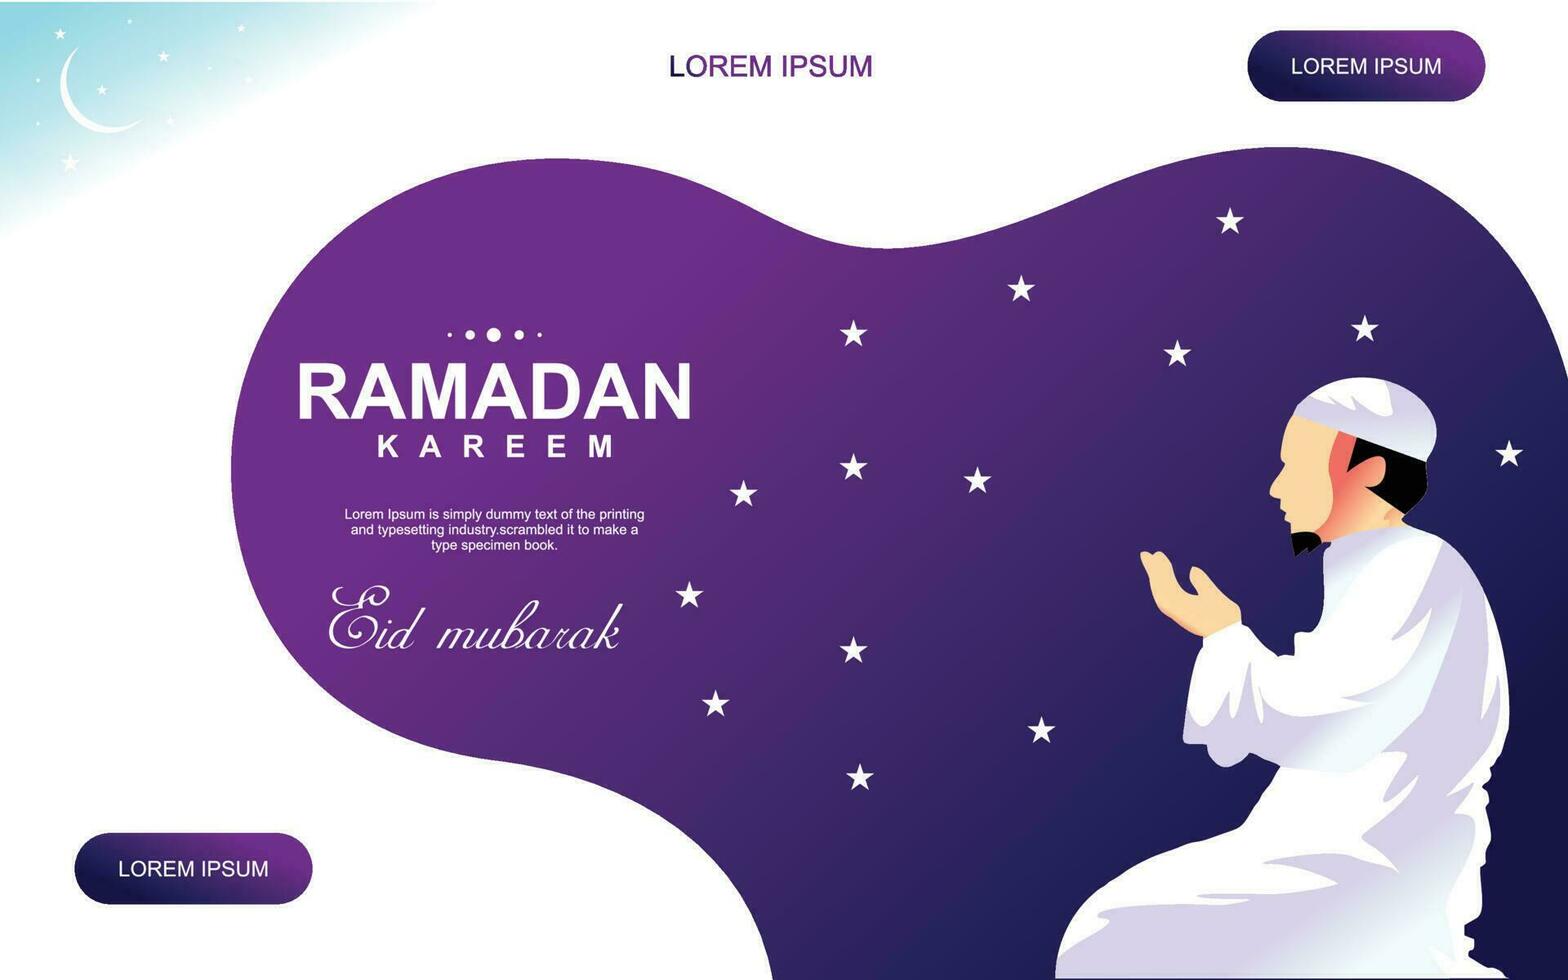 ramadan social media posta vektor dekoration islamic religiös festival och eid Ramzan kareem mubarak